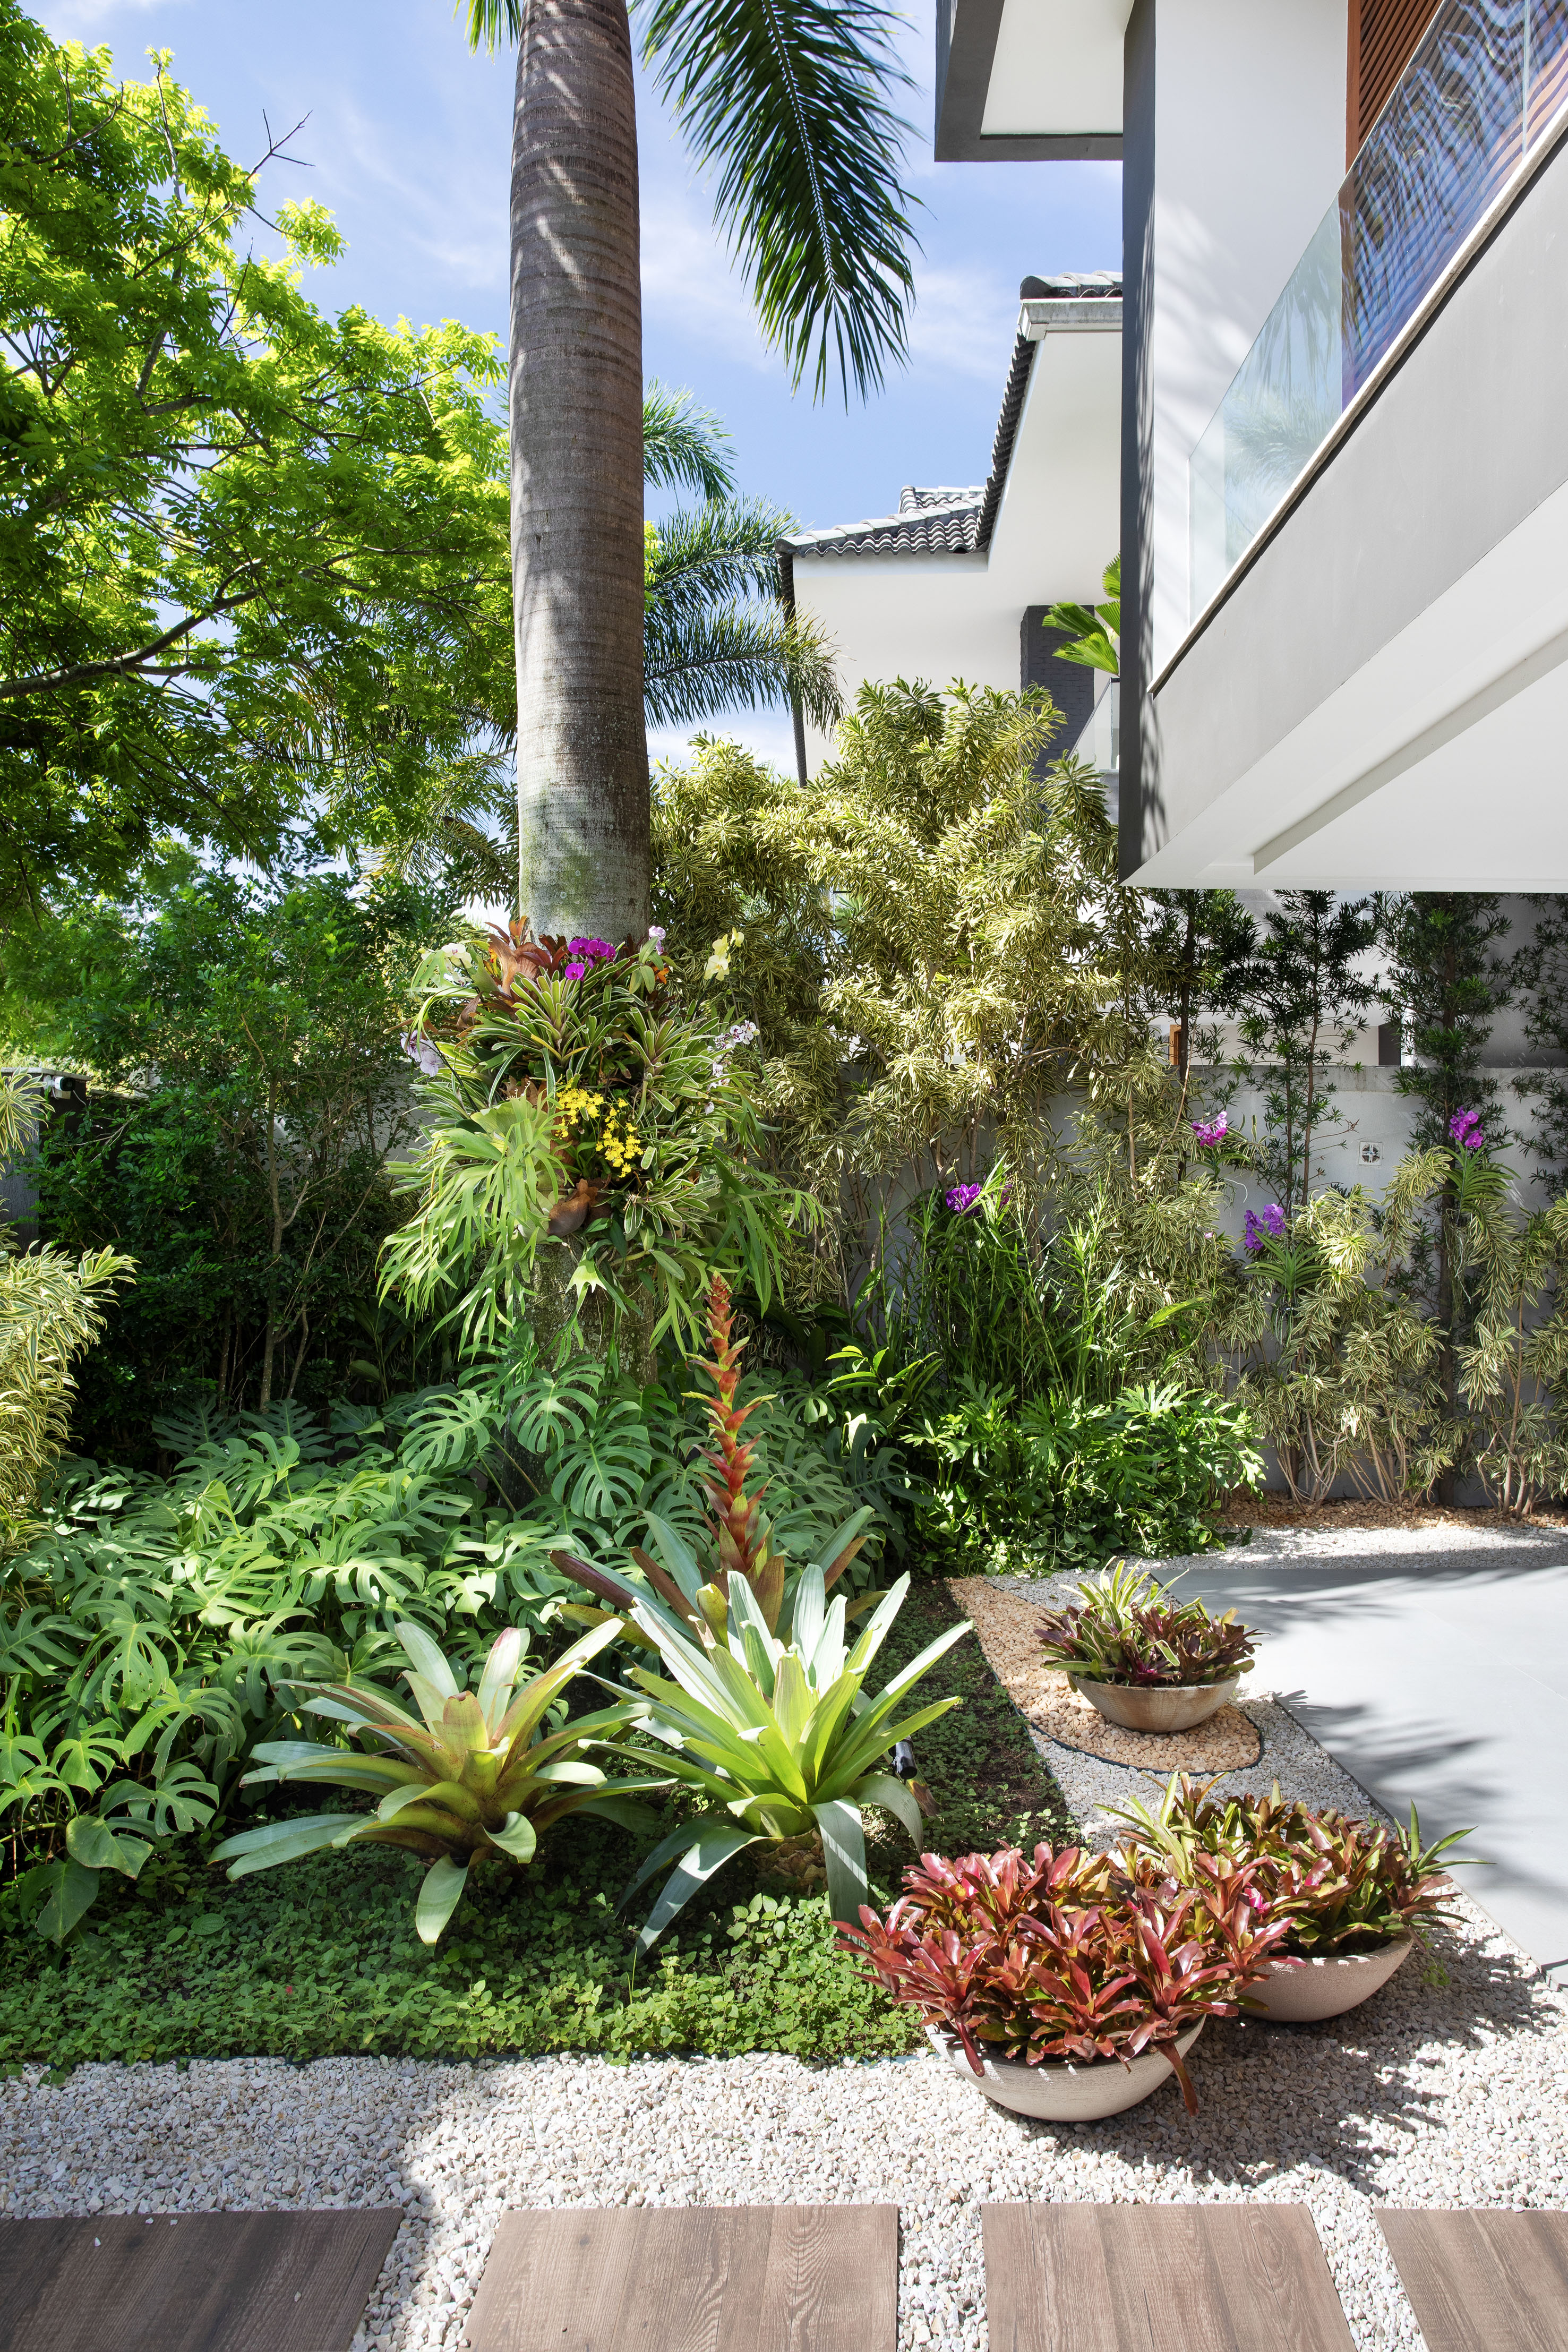 Paisagismo tropical: jardim tem bromélias, palmeiras e jardim vertical. Paisagismo de Horto Girassol. Na foto, jardim, plantas, palmeira, bromélias.